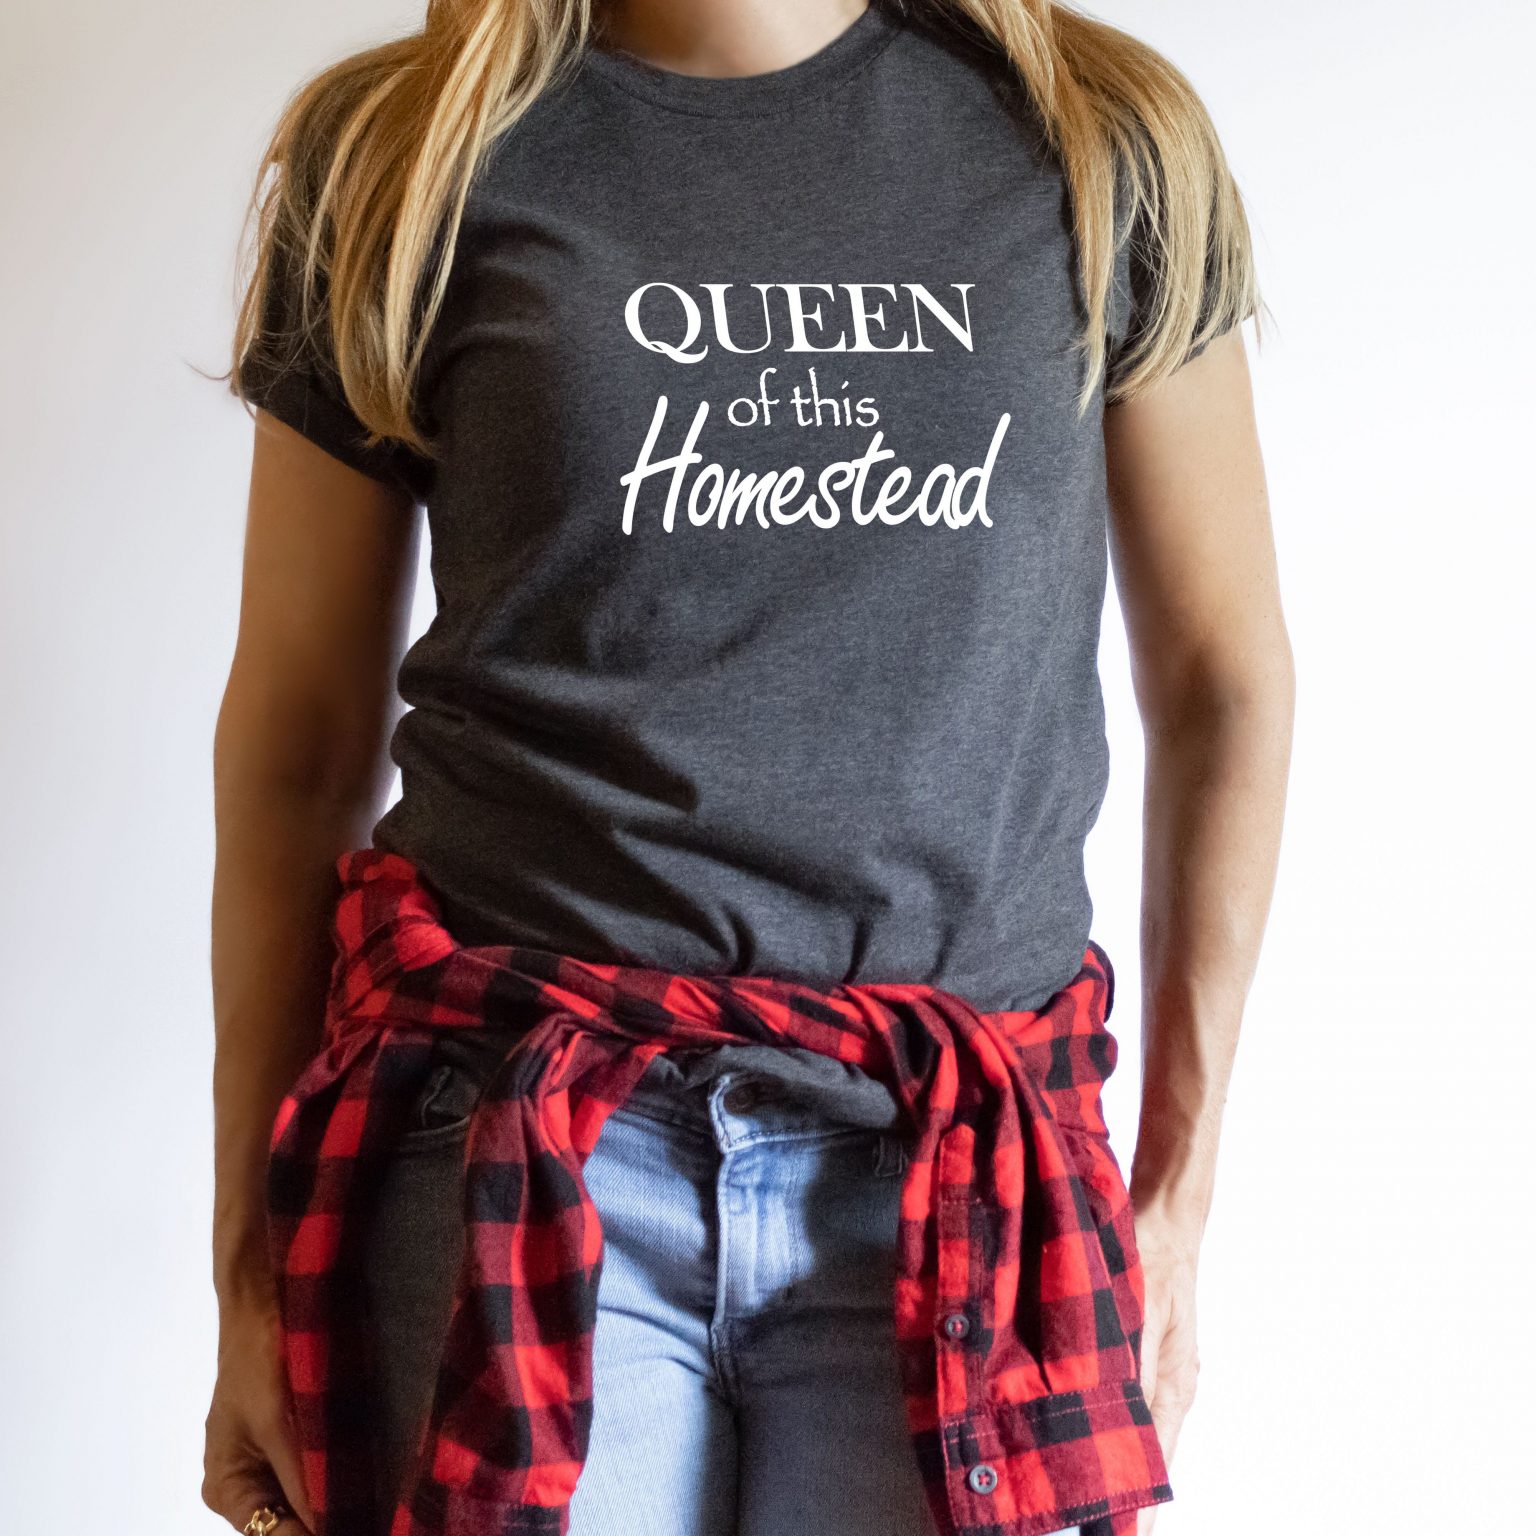 Queen Homestead Mockup